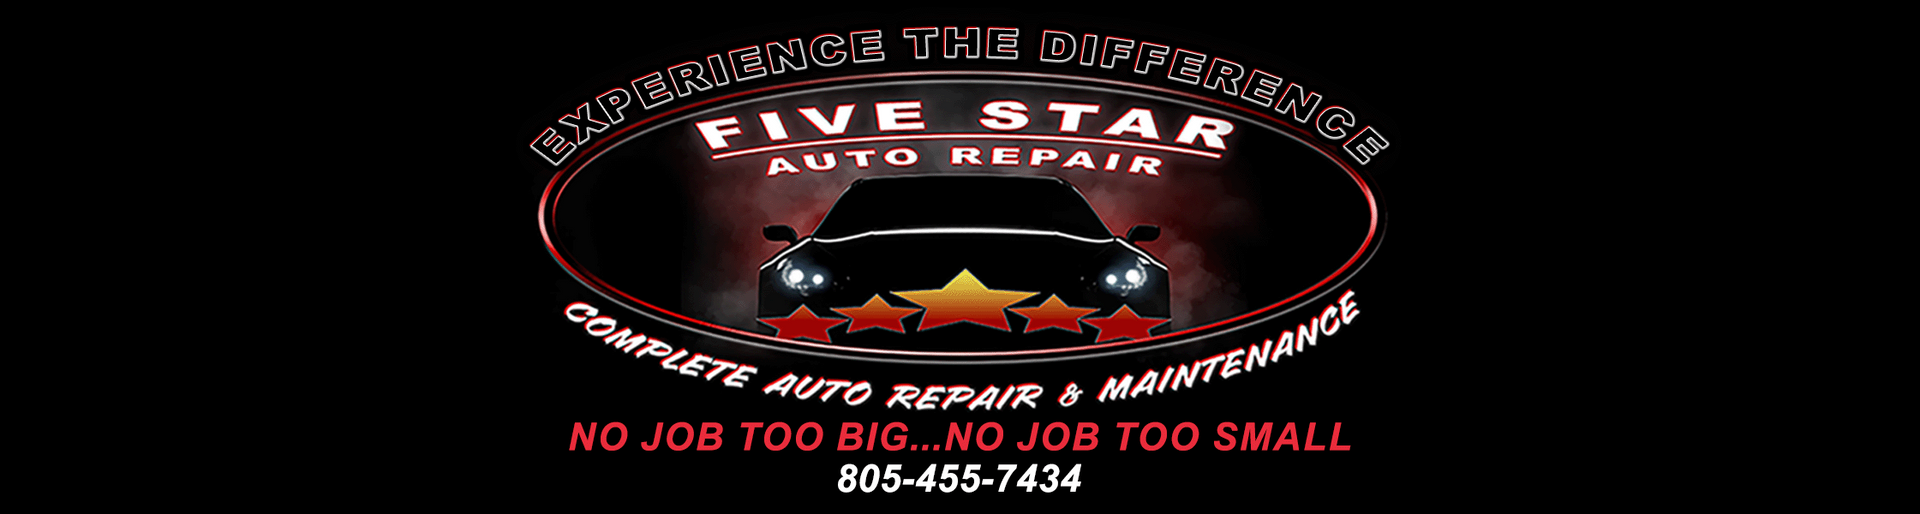 5 Star Auto Repair No Job Too Big No Job Too Small